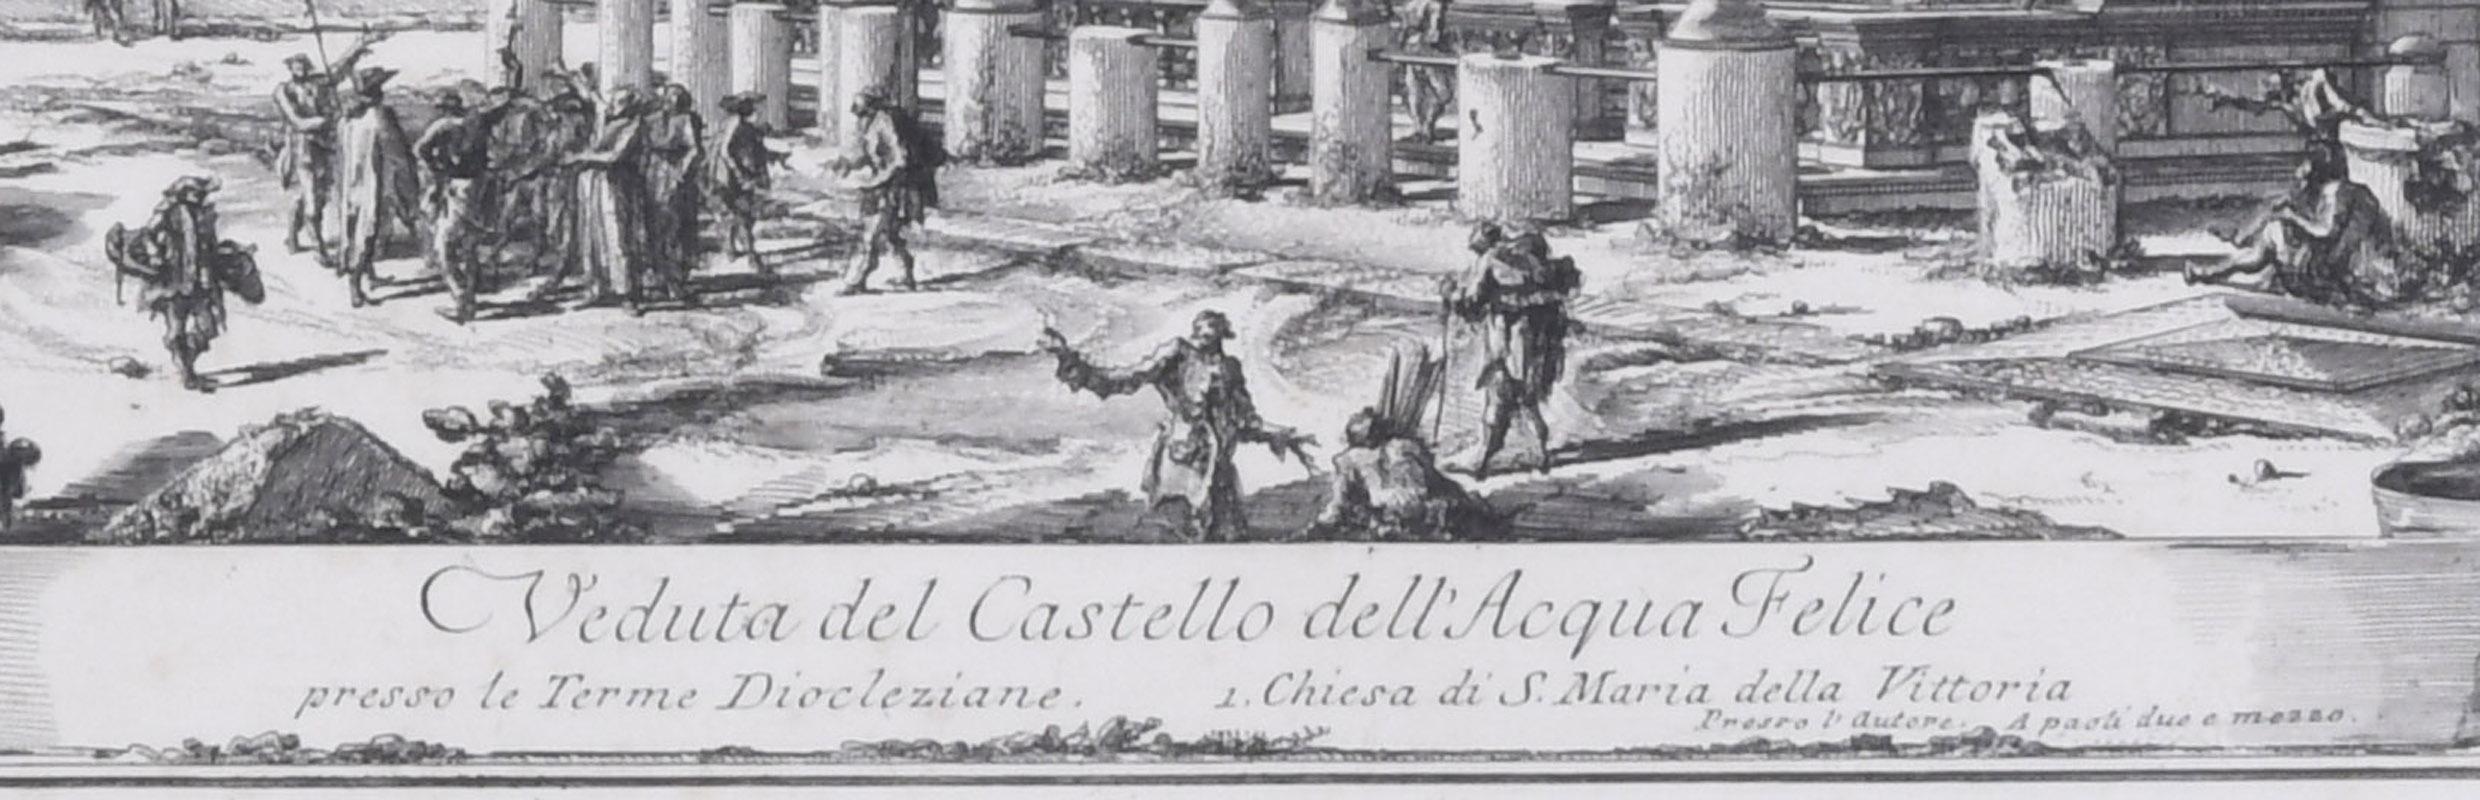 Veduta del Castello dell' Acqua Felice View of the Fountainhead of the Acqua  - Old Masters Print by Giovanni Battista Piranesi